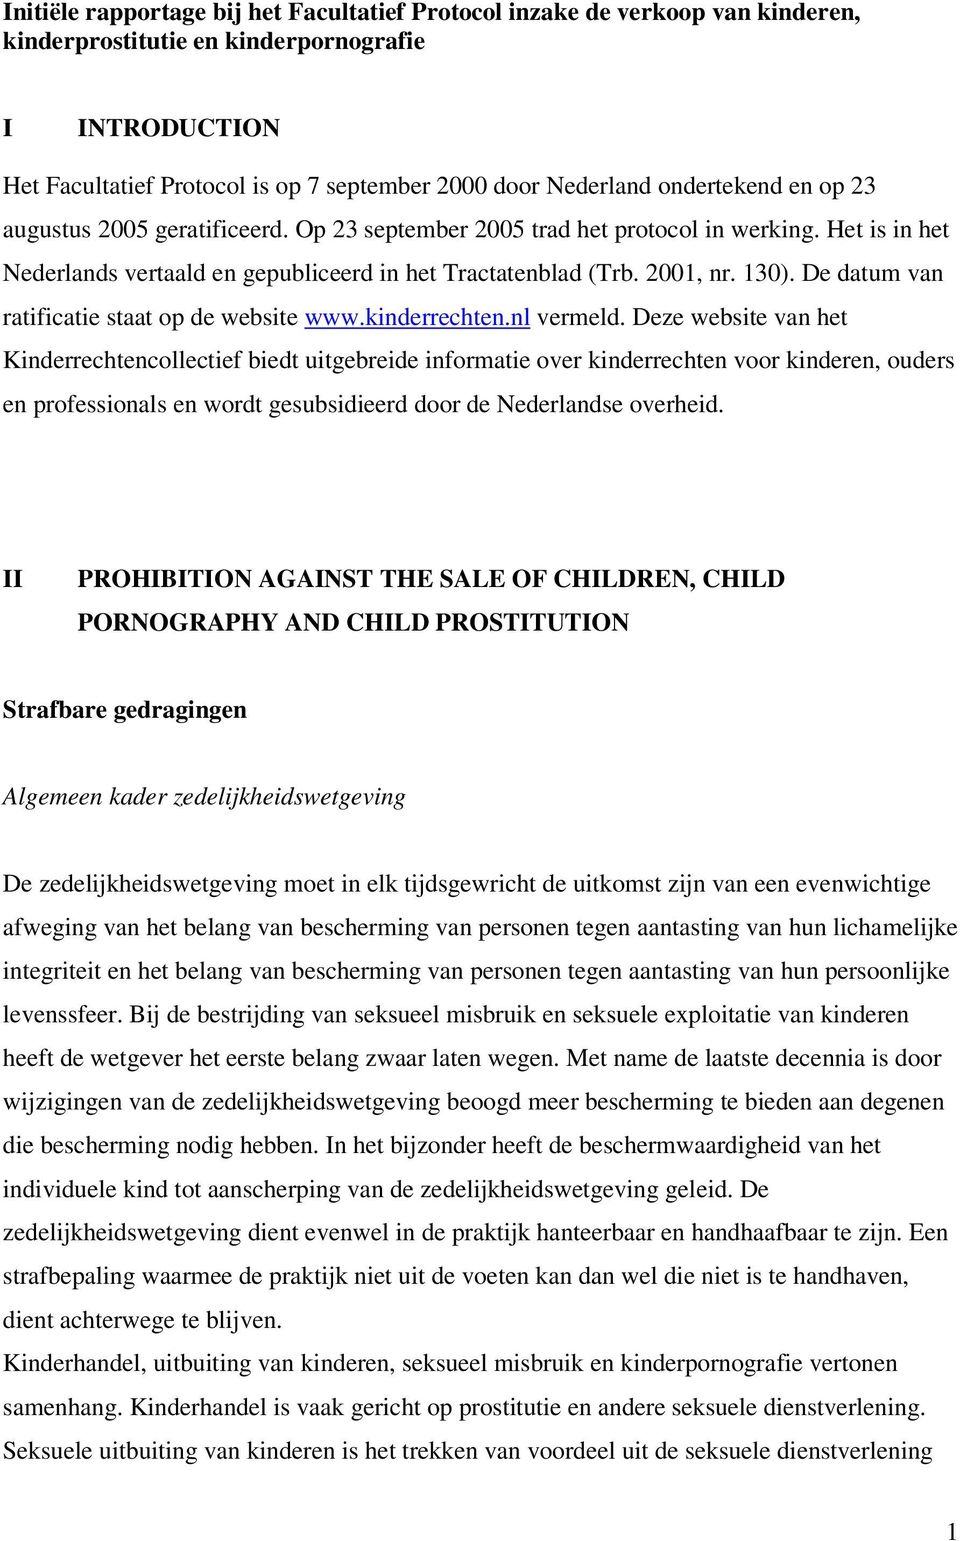 De datum van ratificatie staat op de website www.kinderrechten.nl vermeld.